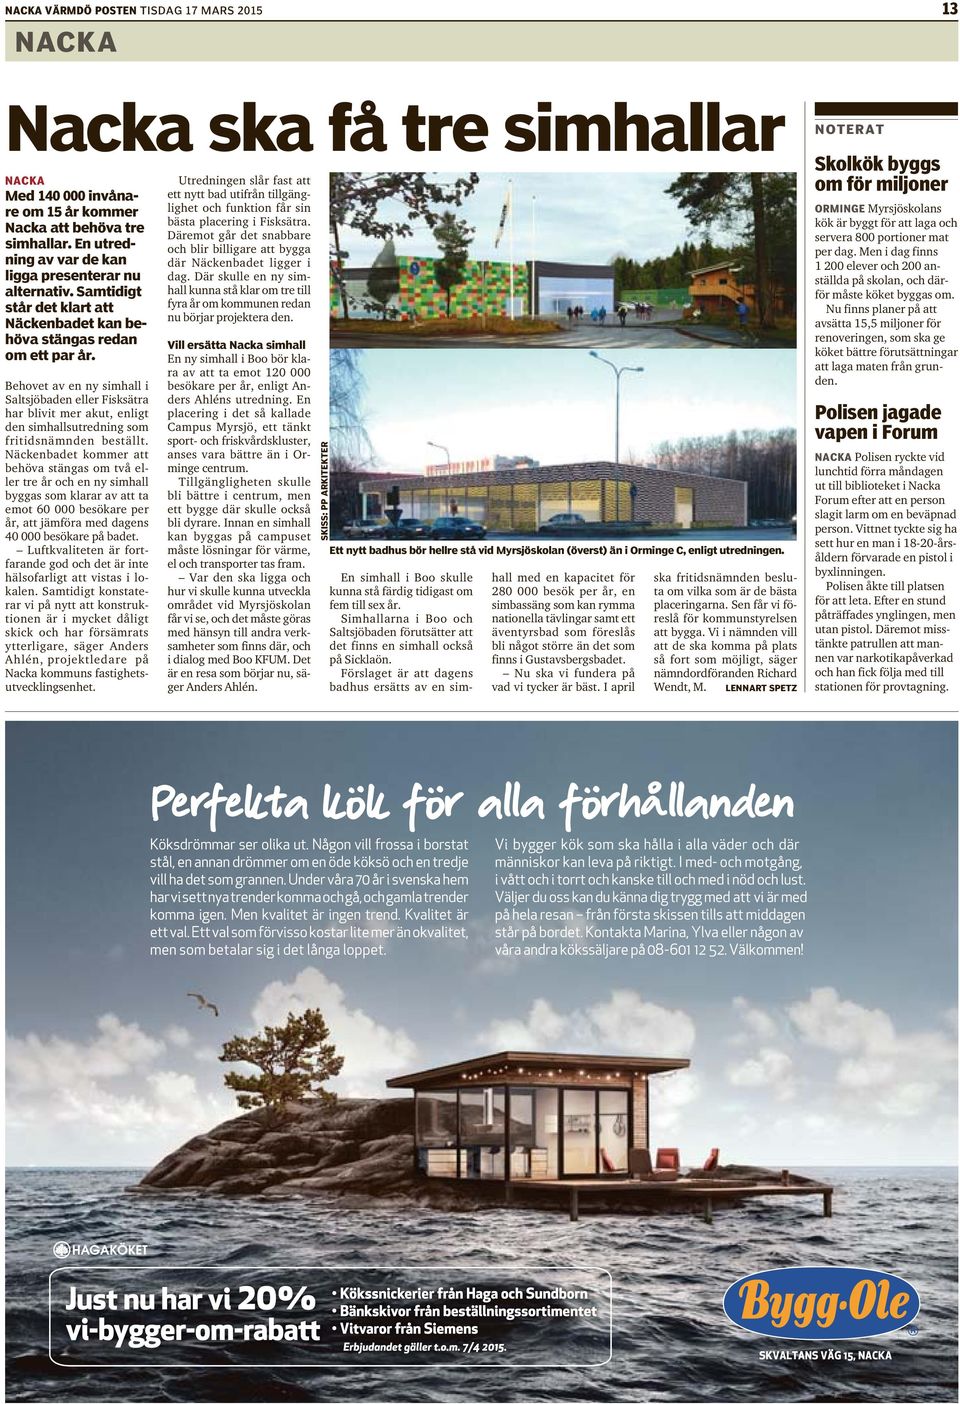 Behovet av en ny simhall i Saltsjöbaden eller Fisksätra har blivit mer akut, enligt den simhallsutredning som fritidsnämnden beställt.